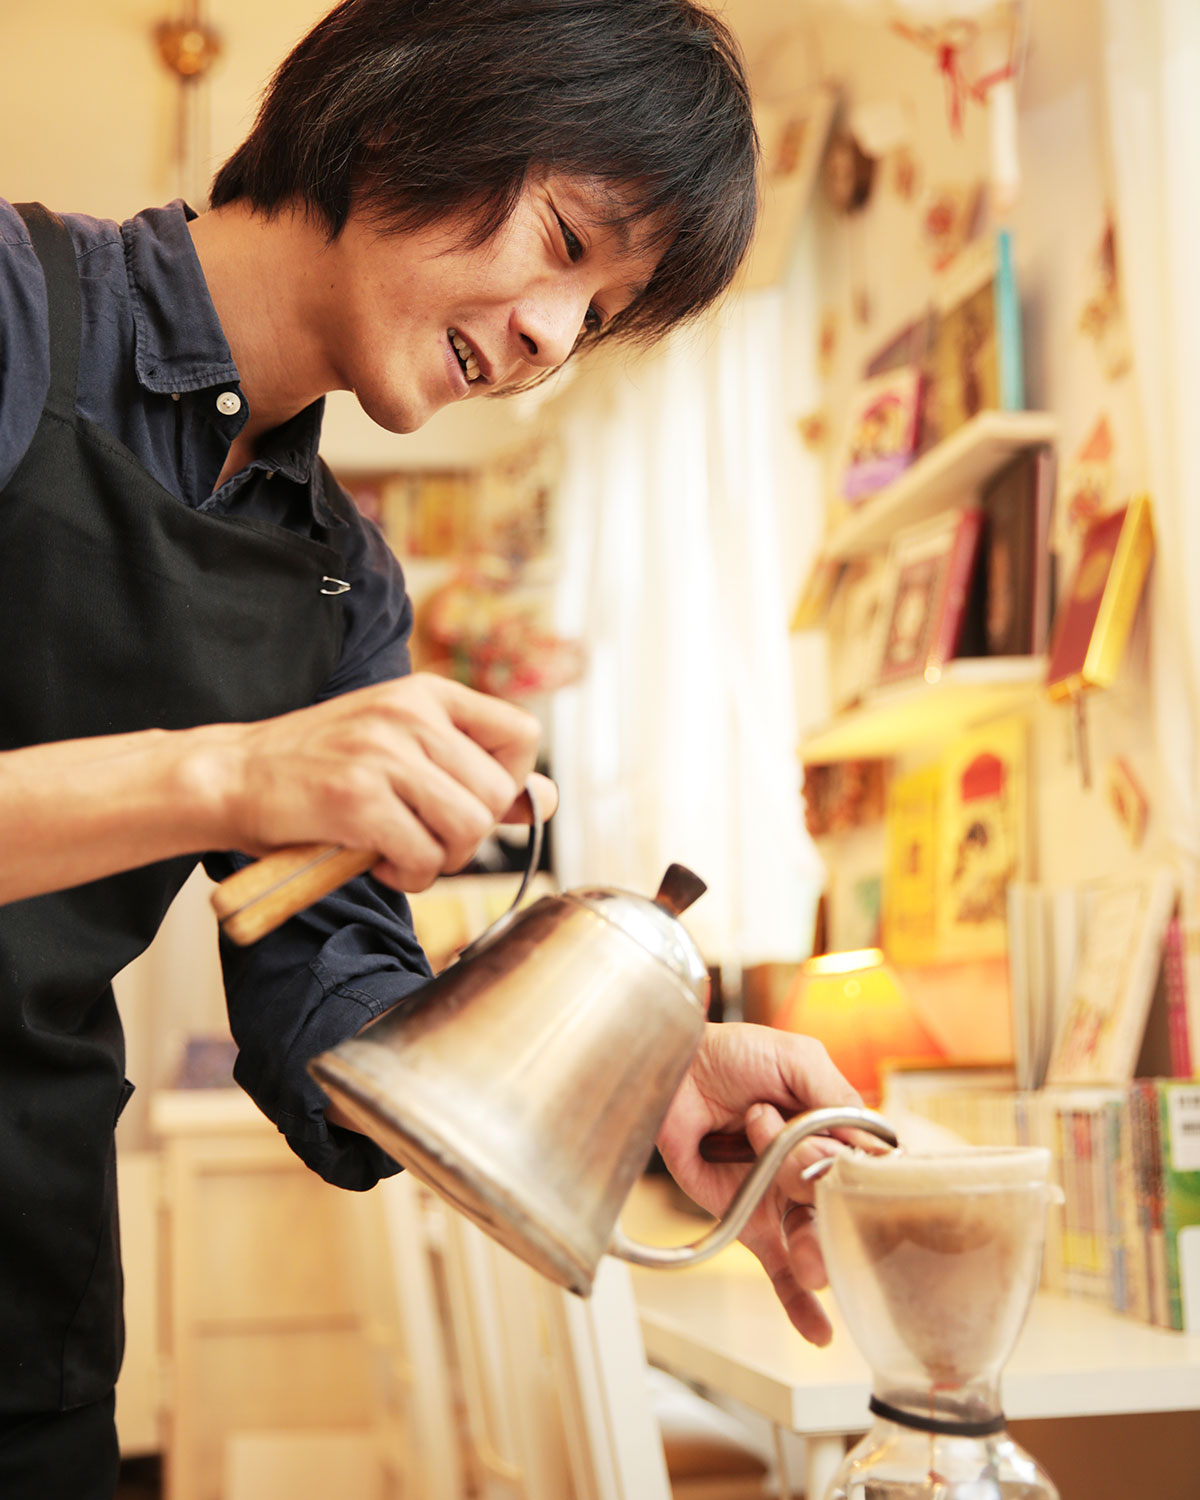 ネルドリップのコーヒーは雑味のないコックリとした旨味。「お菓子は持ち込み自由ですよ」と稲村さん。